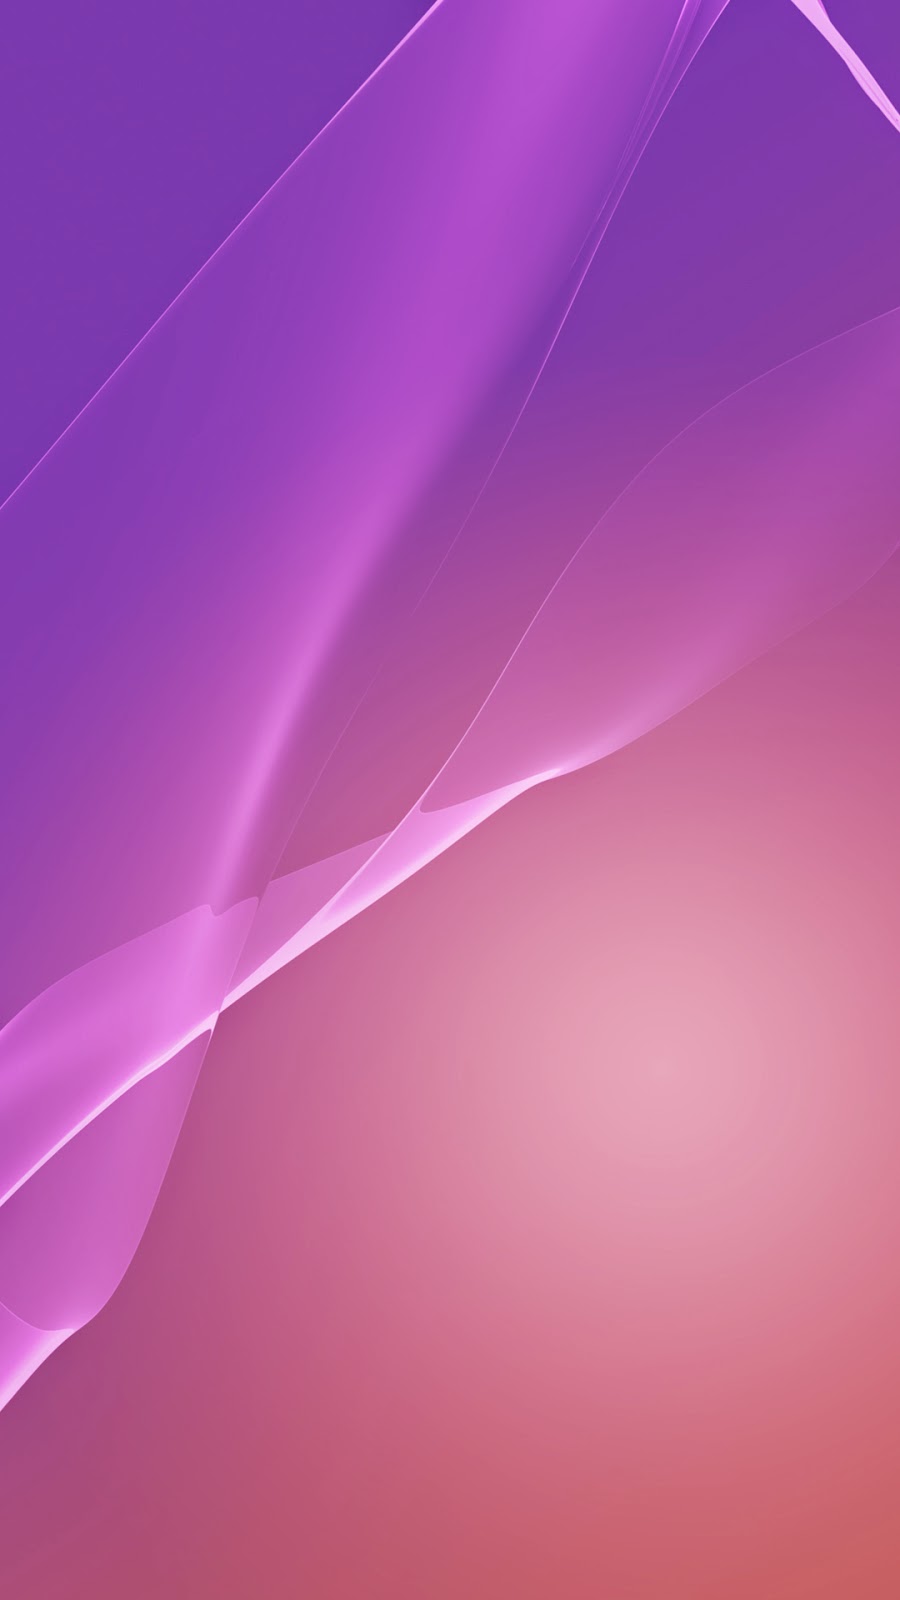 ソニーxperia壁紙ダウンロード,バイオレット,ピンク,紫の,ライラック,ライン